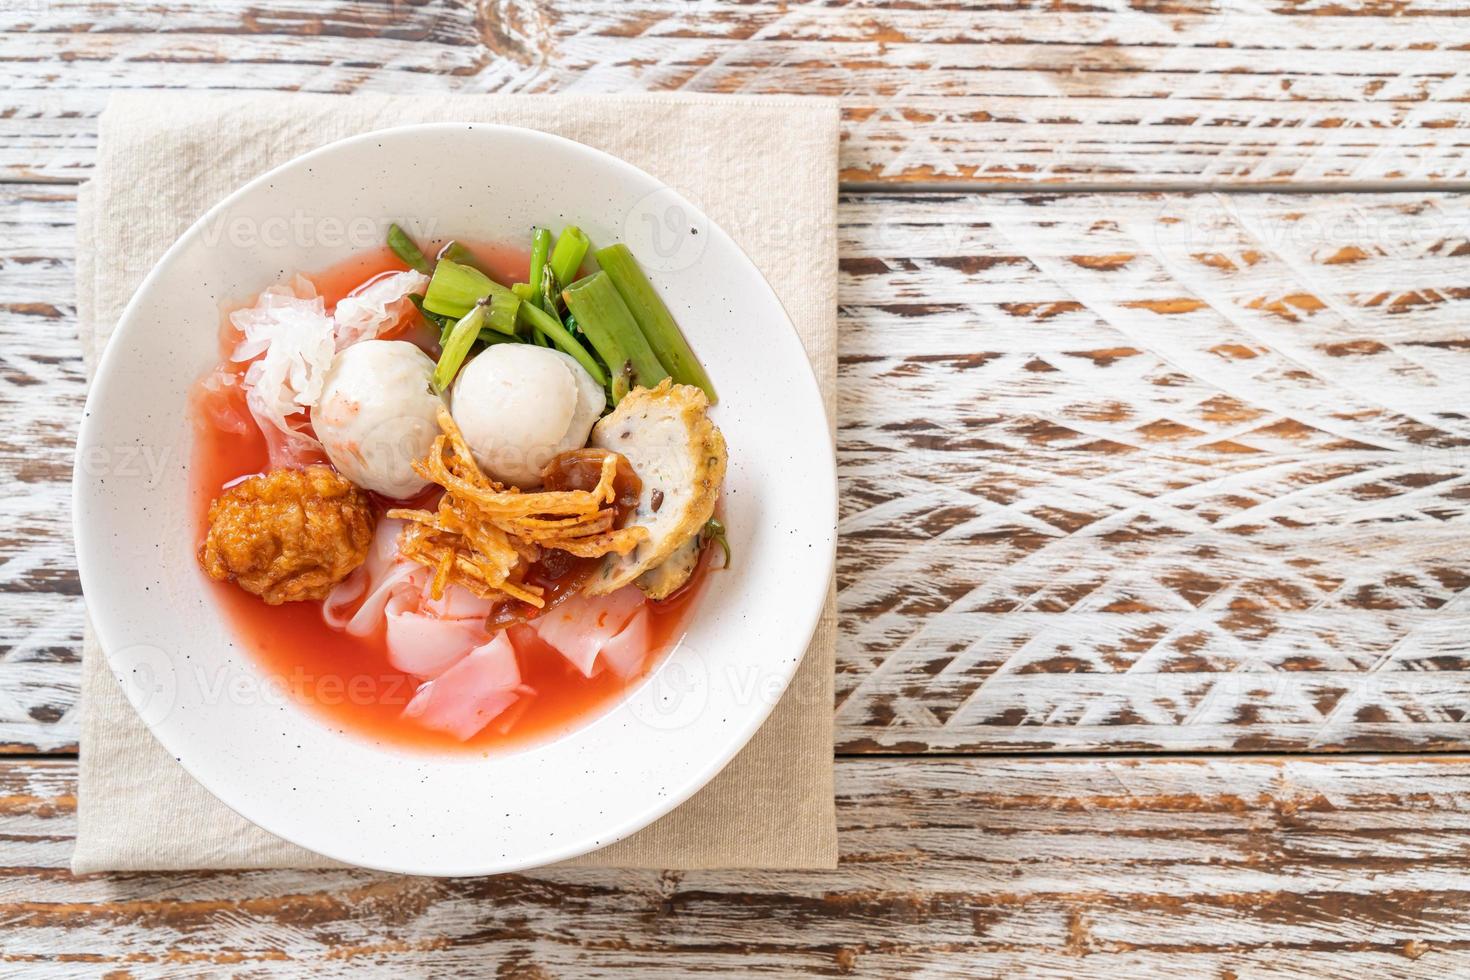 thailändische Nudeln mit verschiedenem Tofu und Fischbällchen in roter Suppe foto